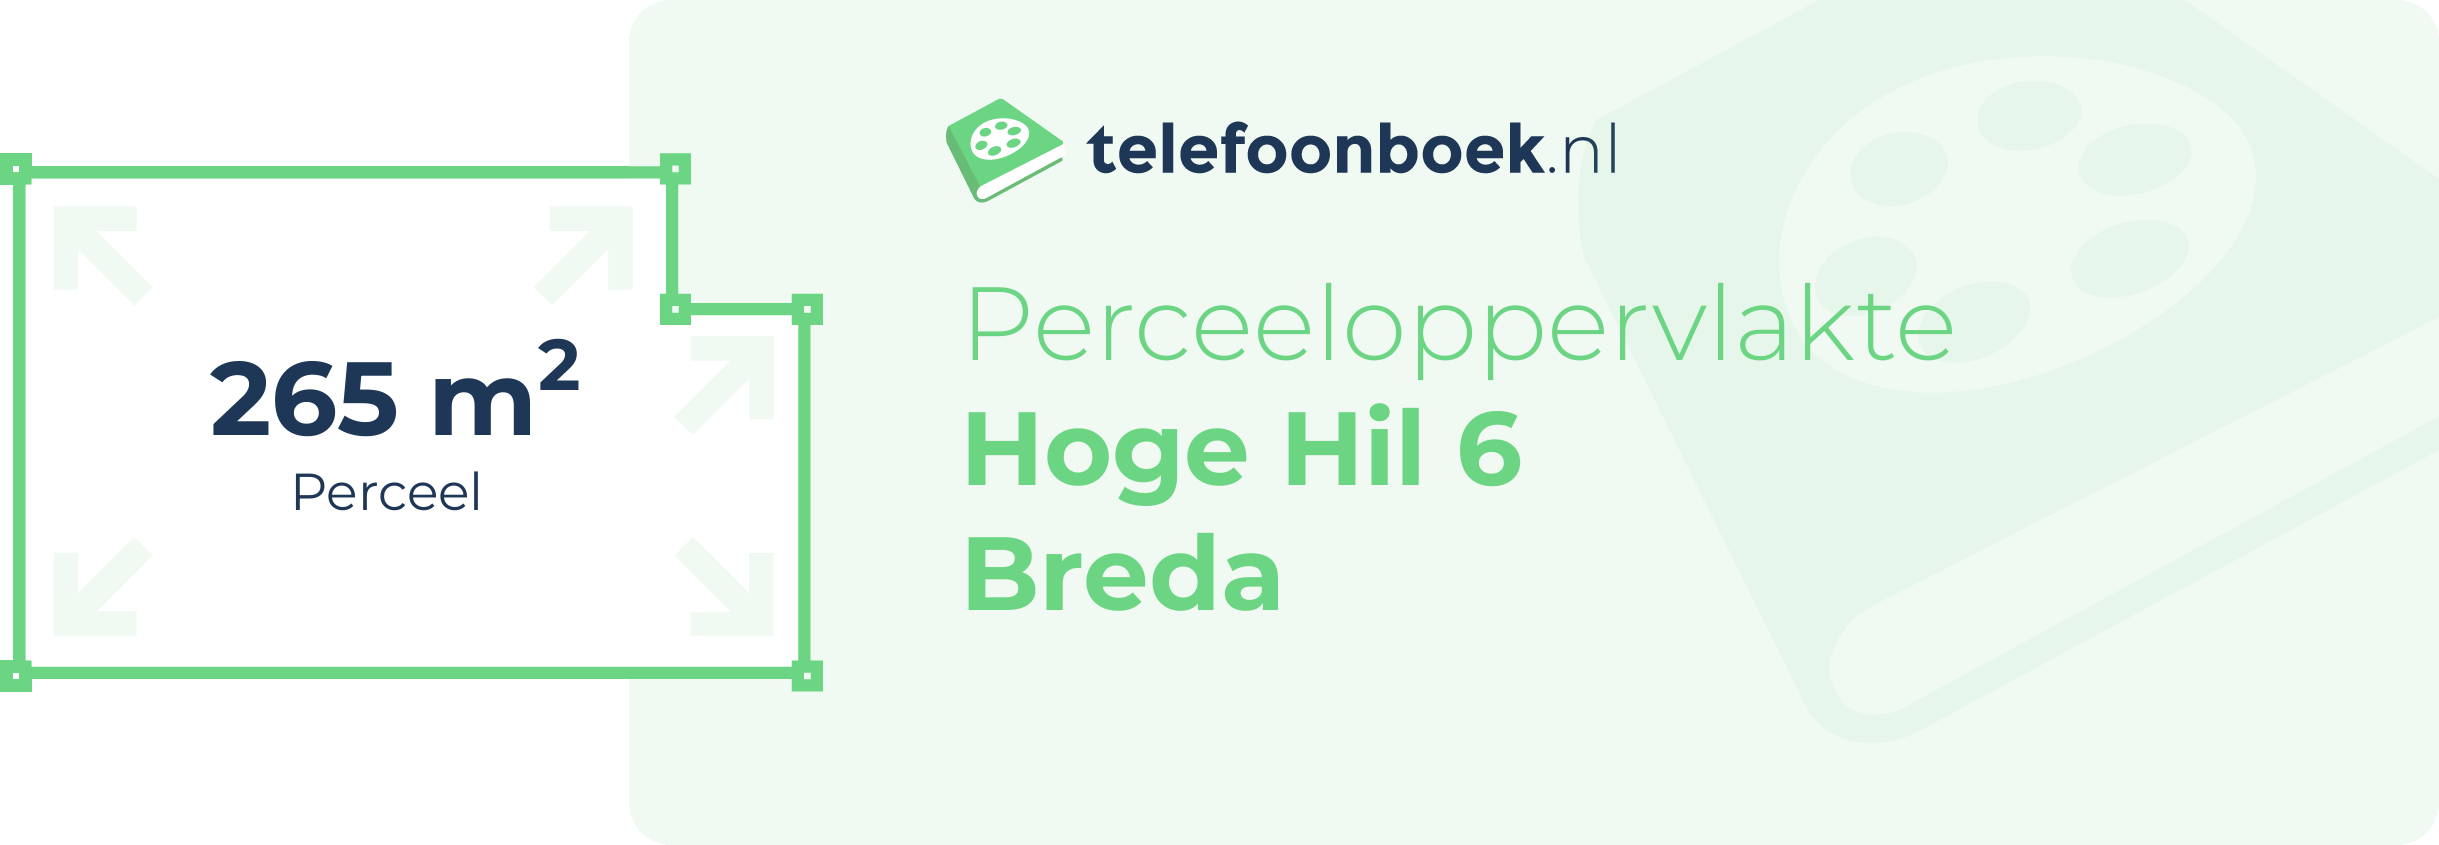 Perceeloppervlakte Hoge Hil 6 Breda